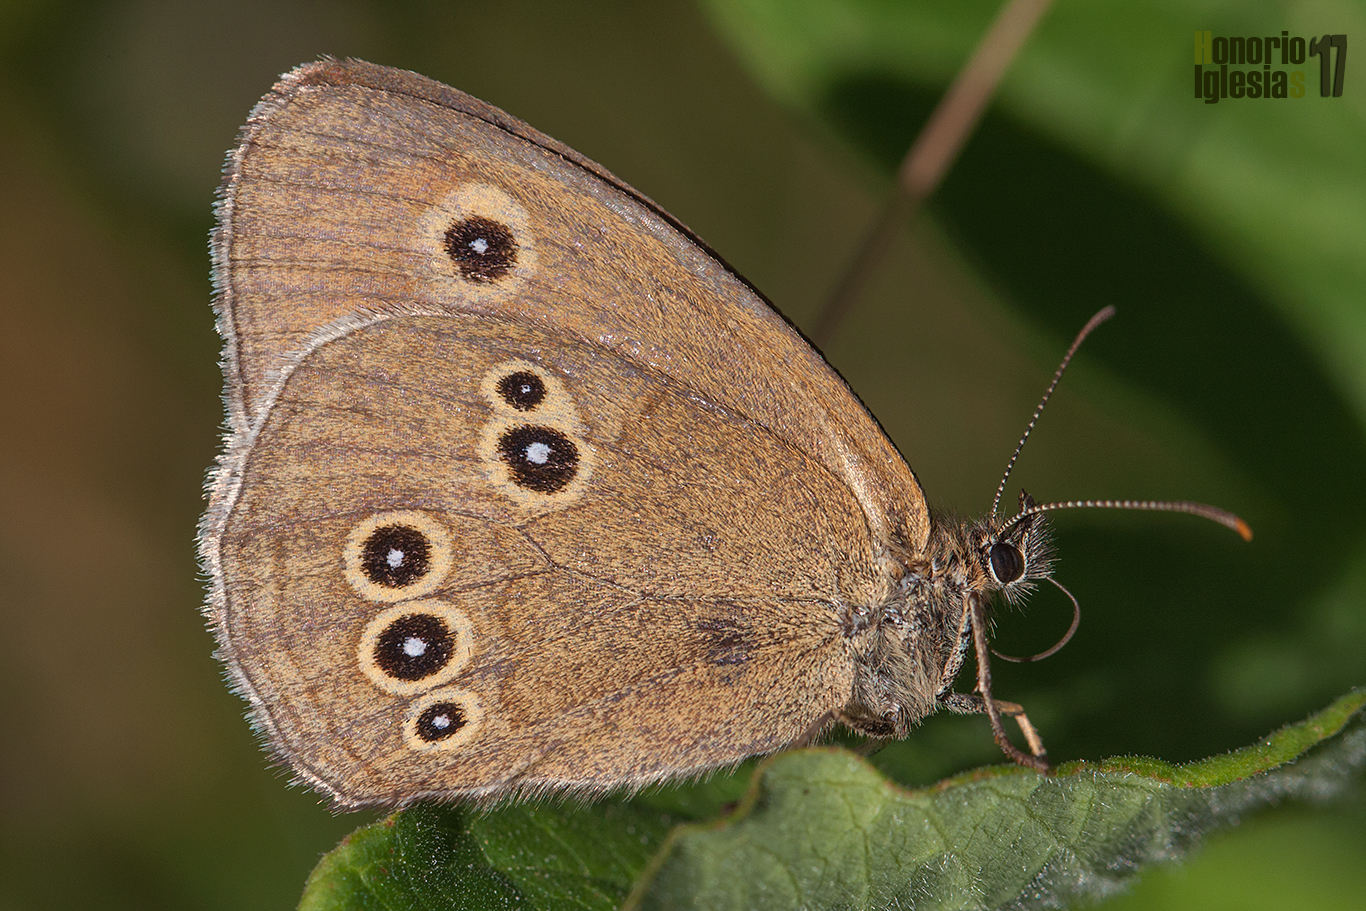 Ejemplar de mariposa sortijitas (Aphantopus hyperantus) mostrando su reverso alar en el que se puede apreciar los ocelos pupilados bordeados de un ribete claro que le dan el nombre común a la especie